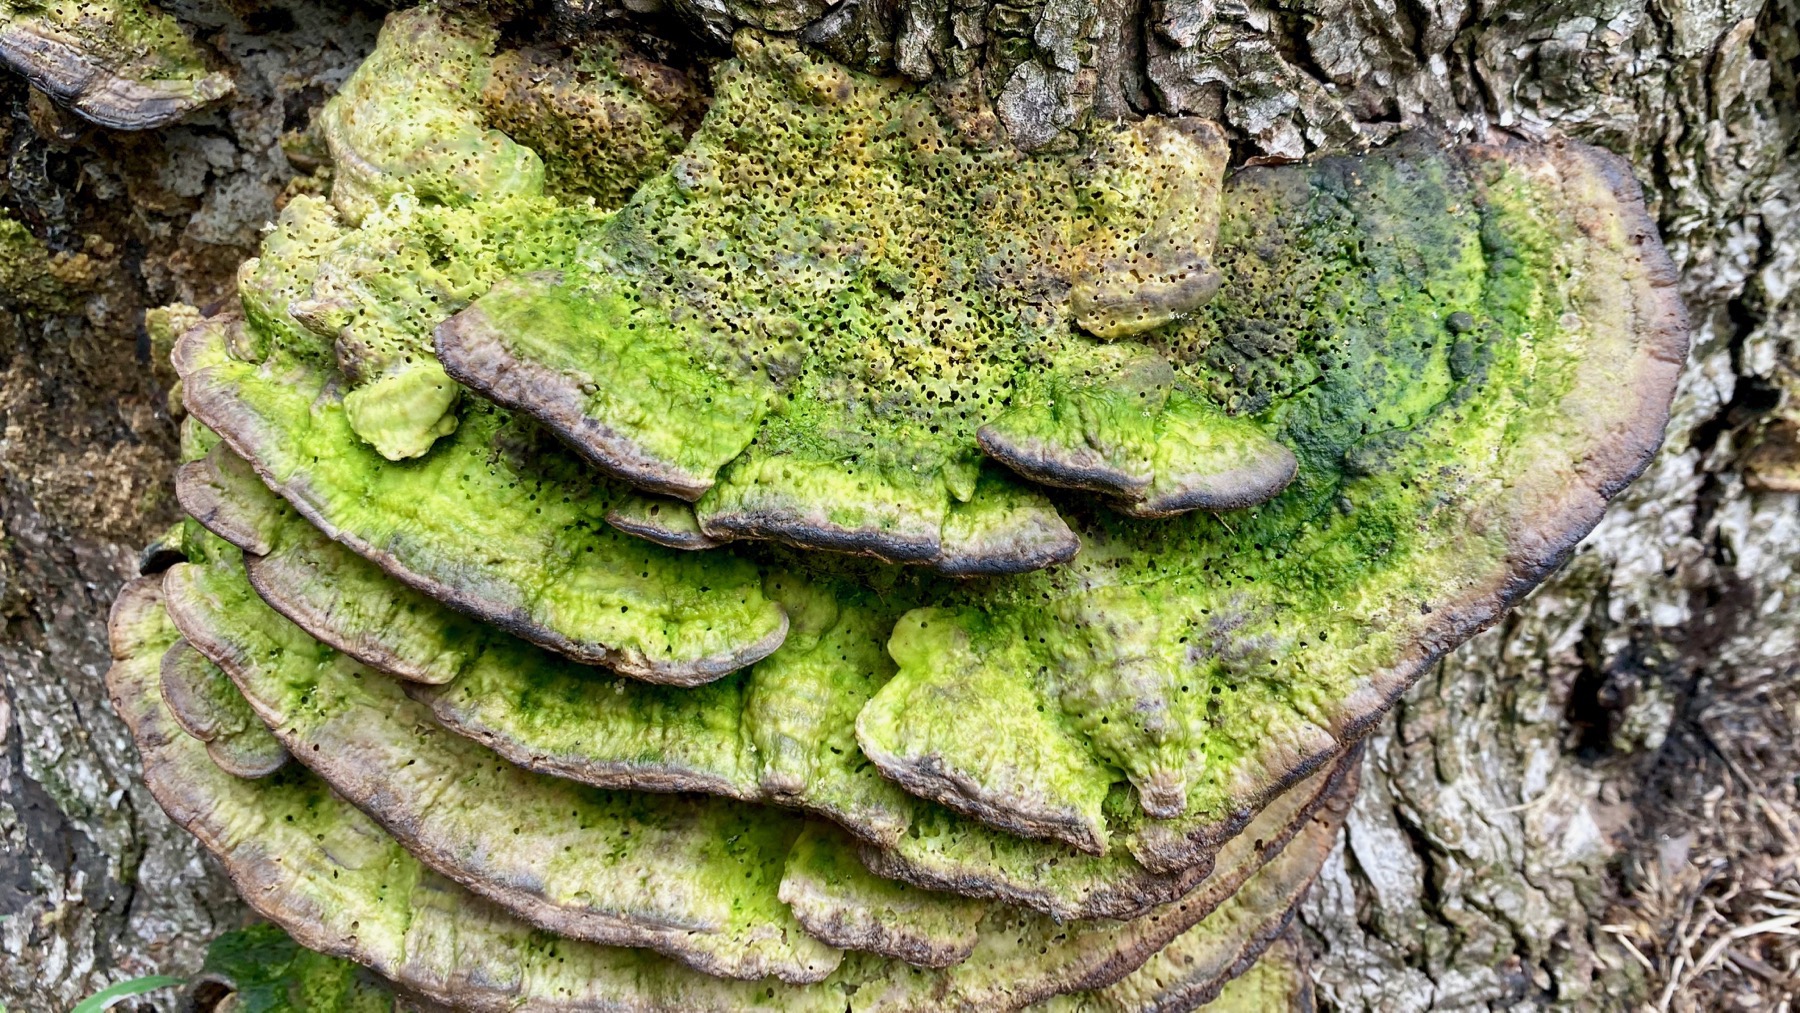 Moldy fungi